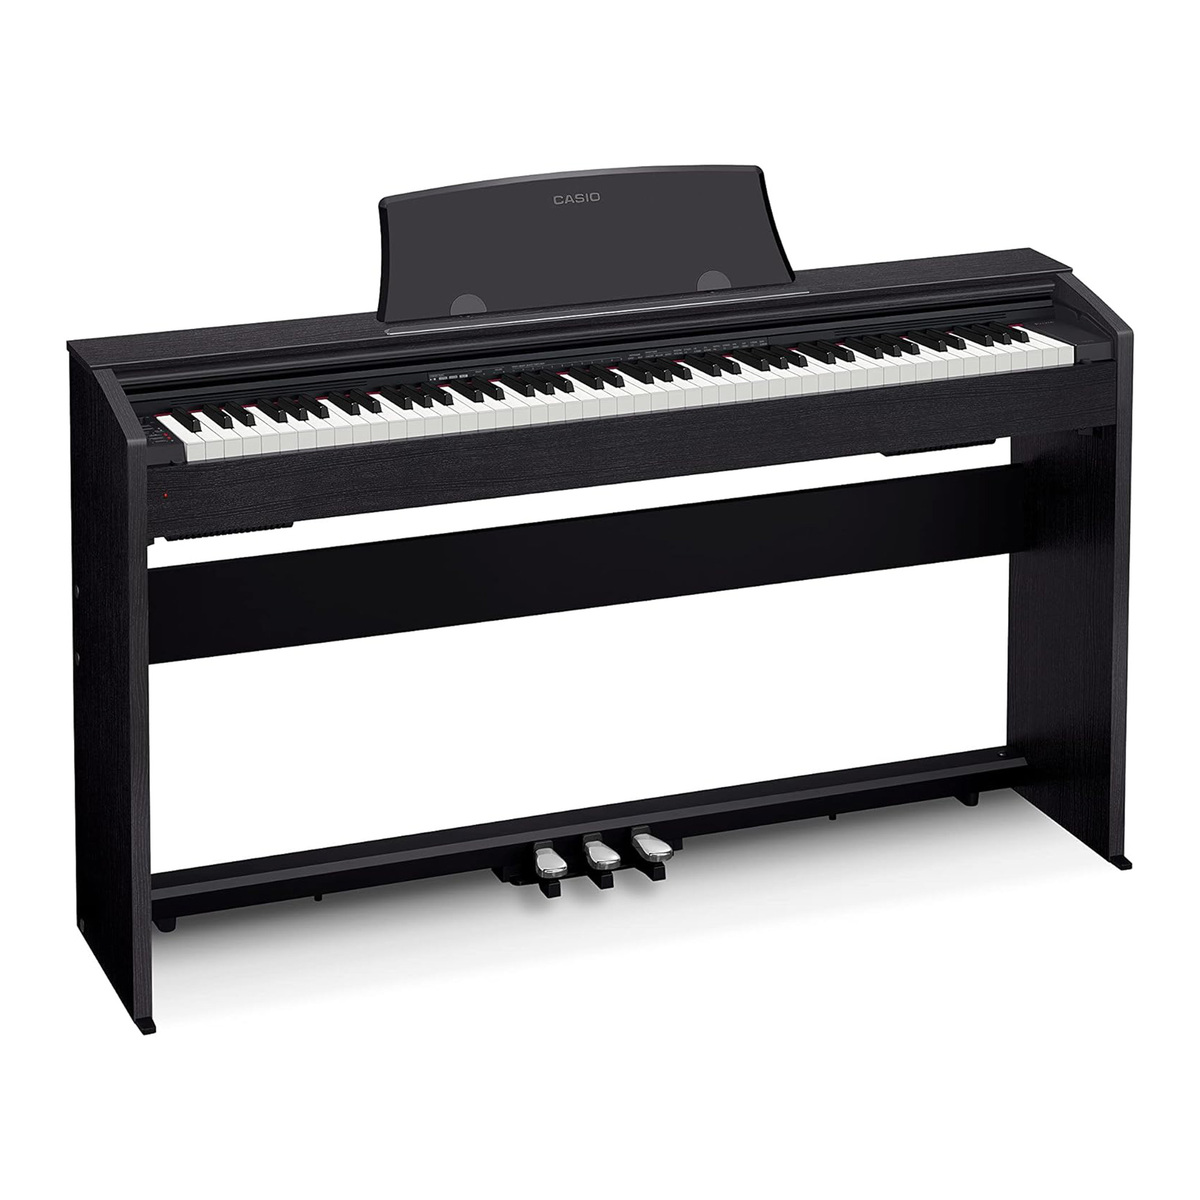 Casio Privia Digital Piano, Black, PX-770BKC2